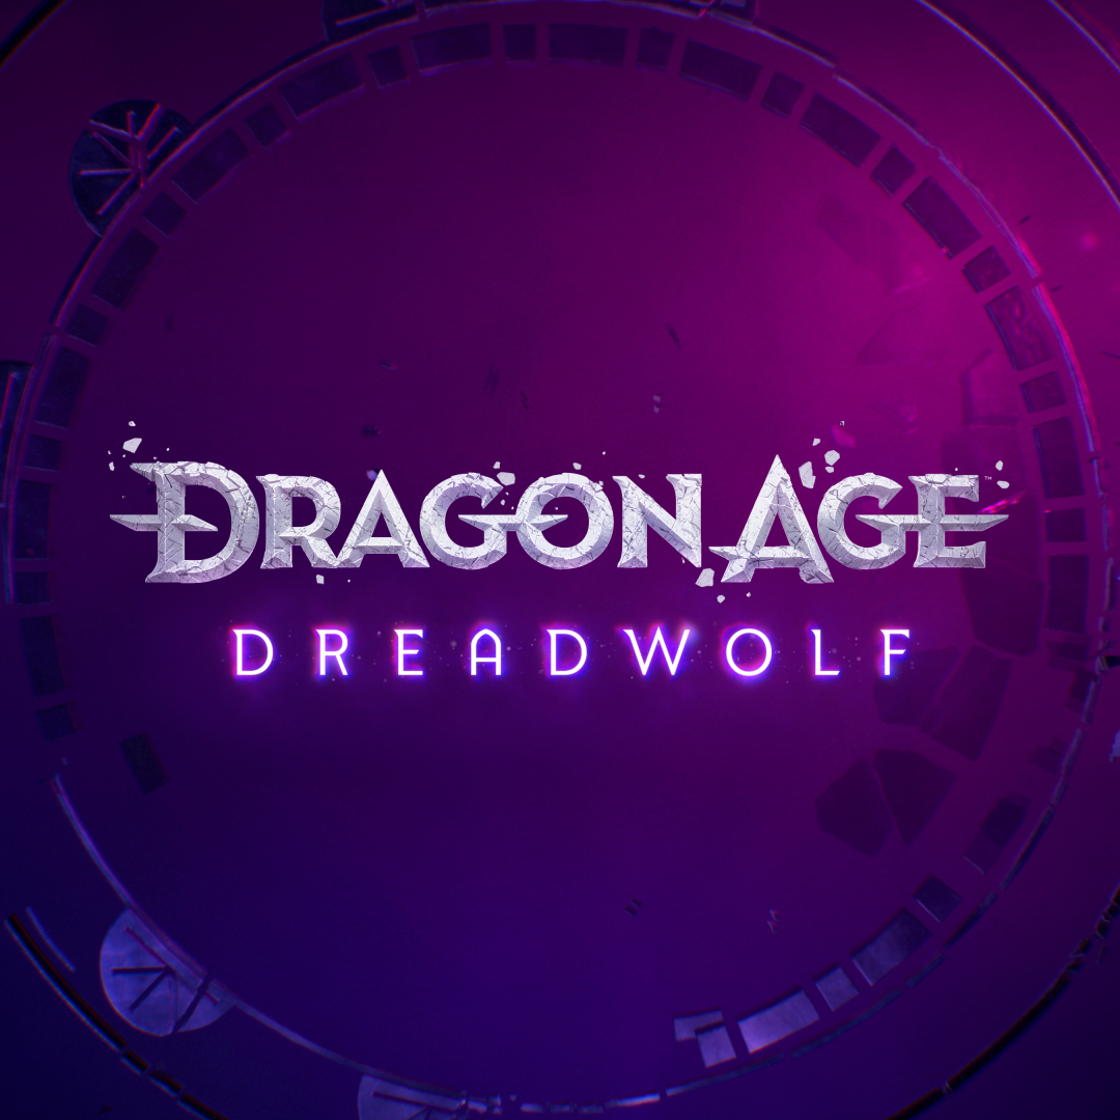 Le prochain chapitre de la série se dévoile avec Dragon Age: Dreadwolf™